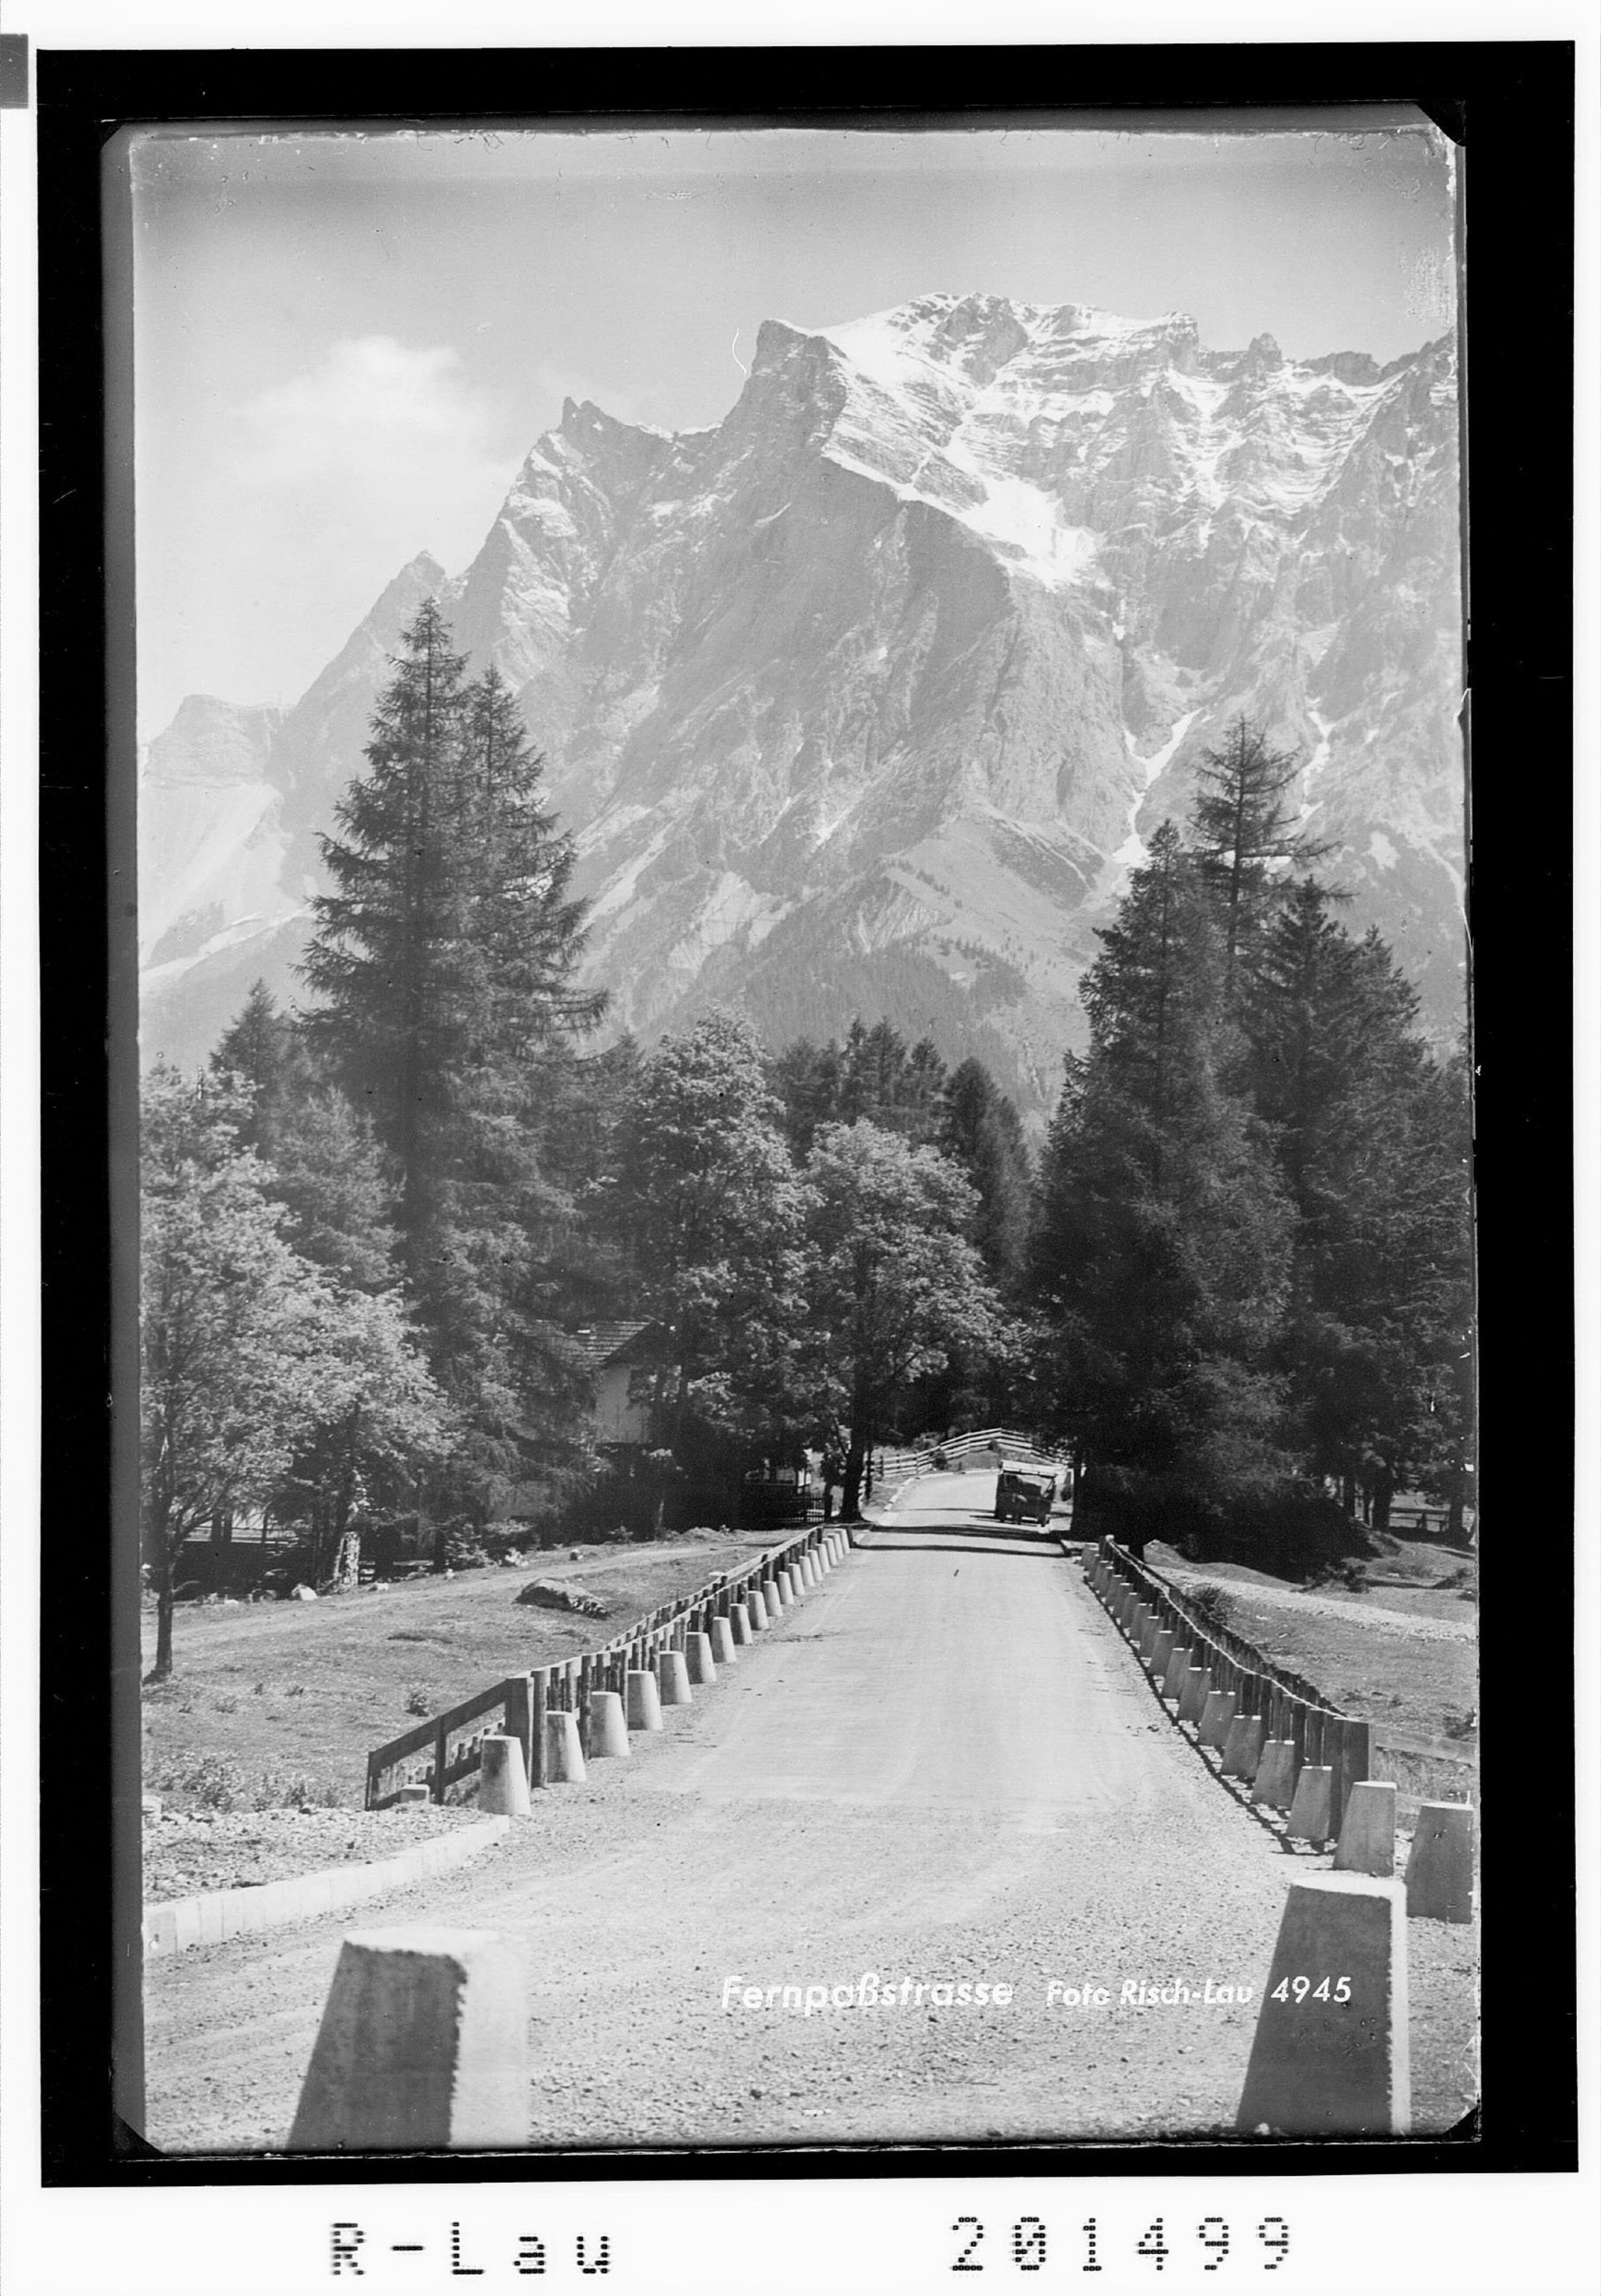 Fernpass gegen Zugspitze 2965 m></div>


    <hr>
    <div class=